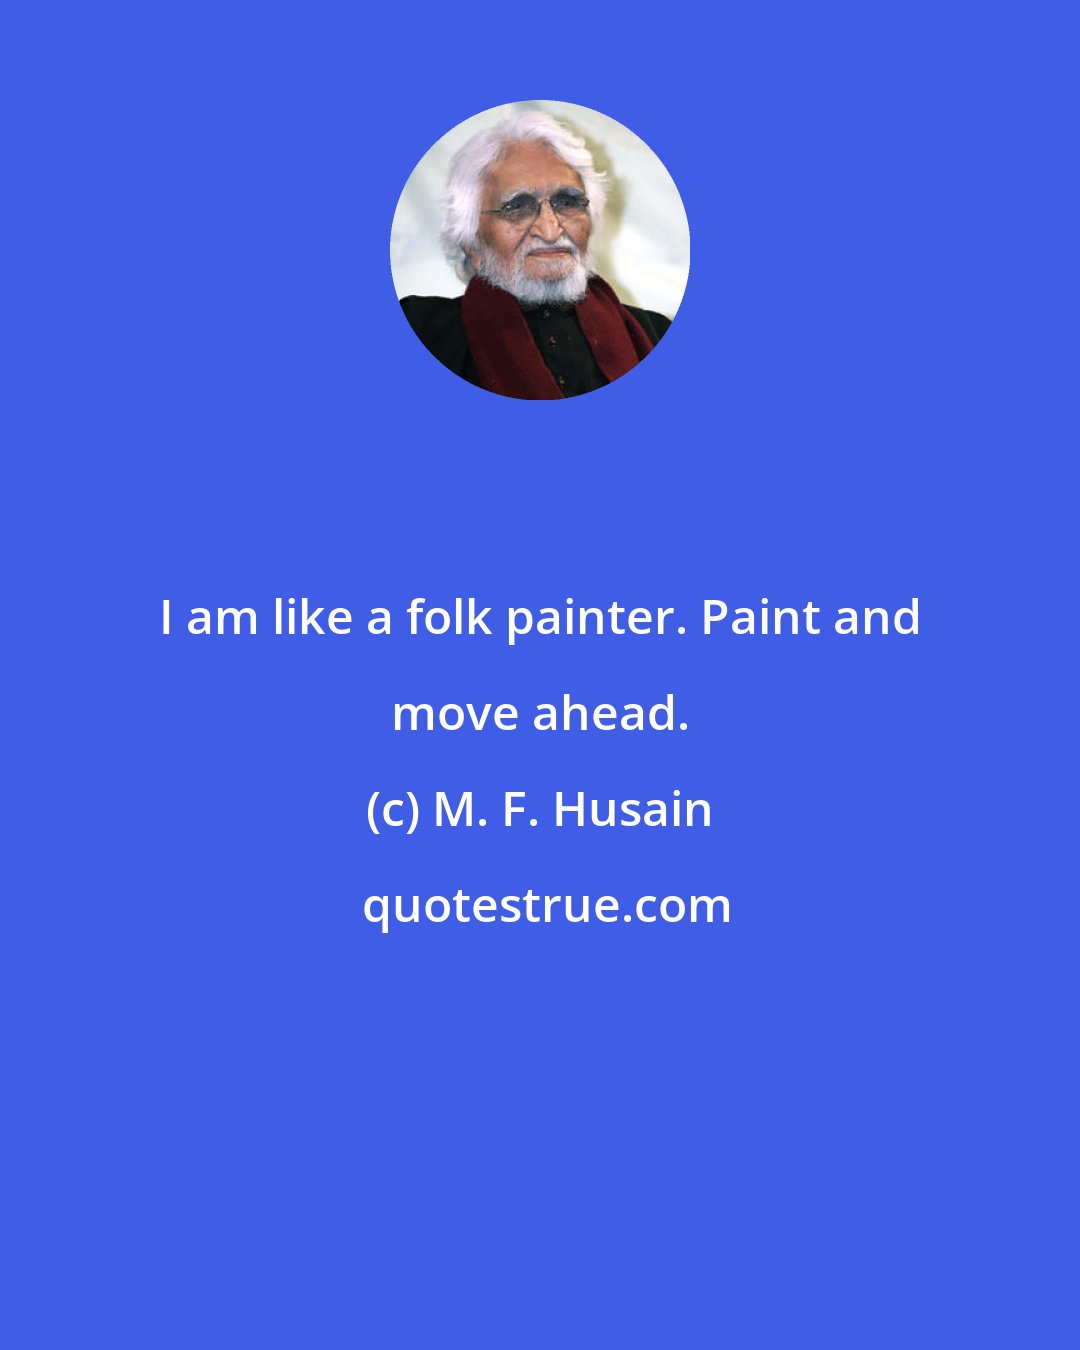 M. F. Husain: I am like a folk painter. Paint and move ahead.